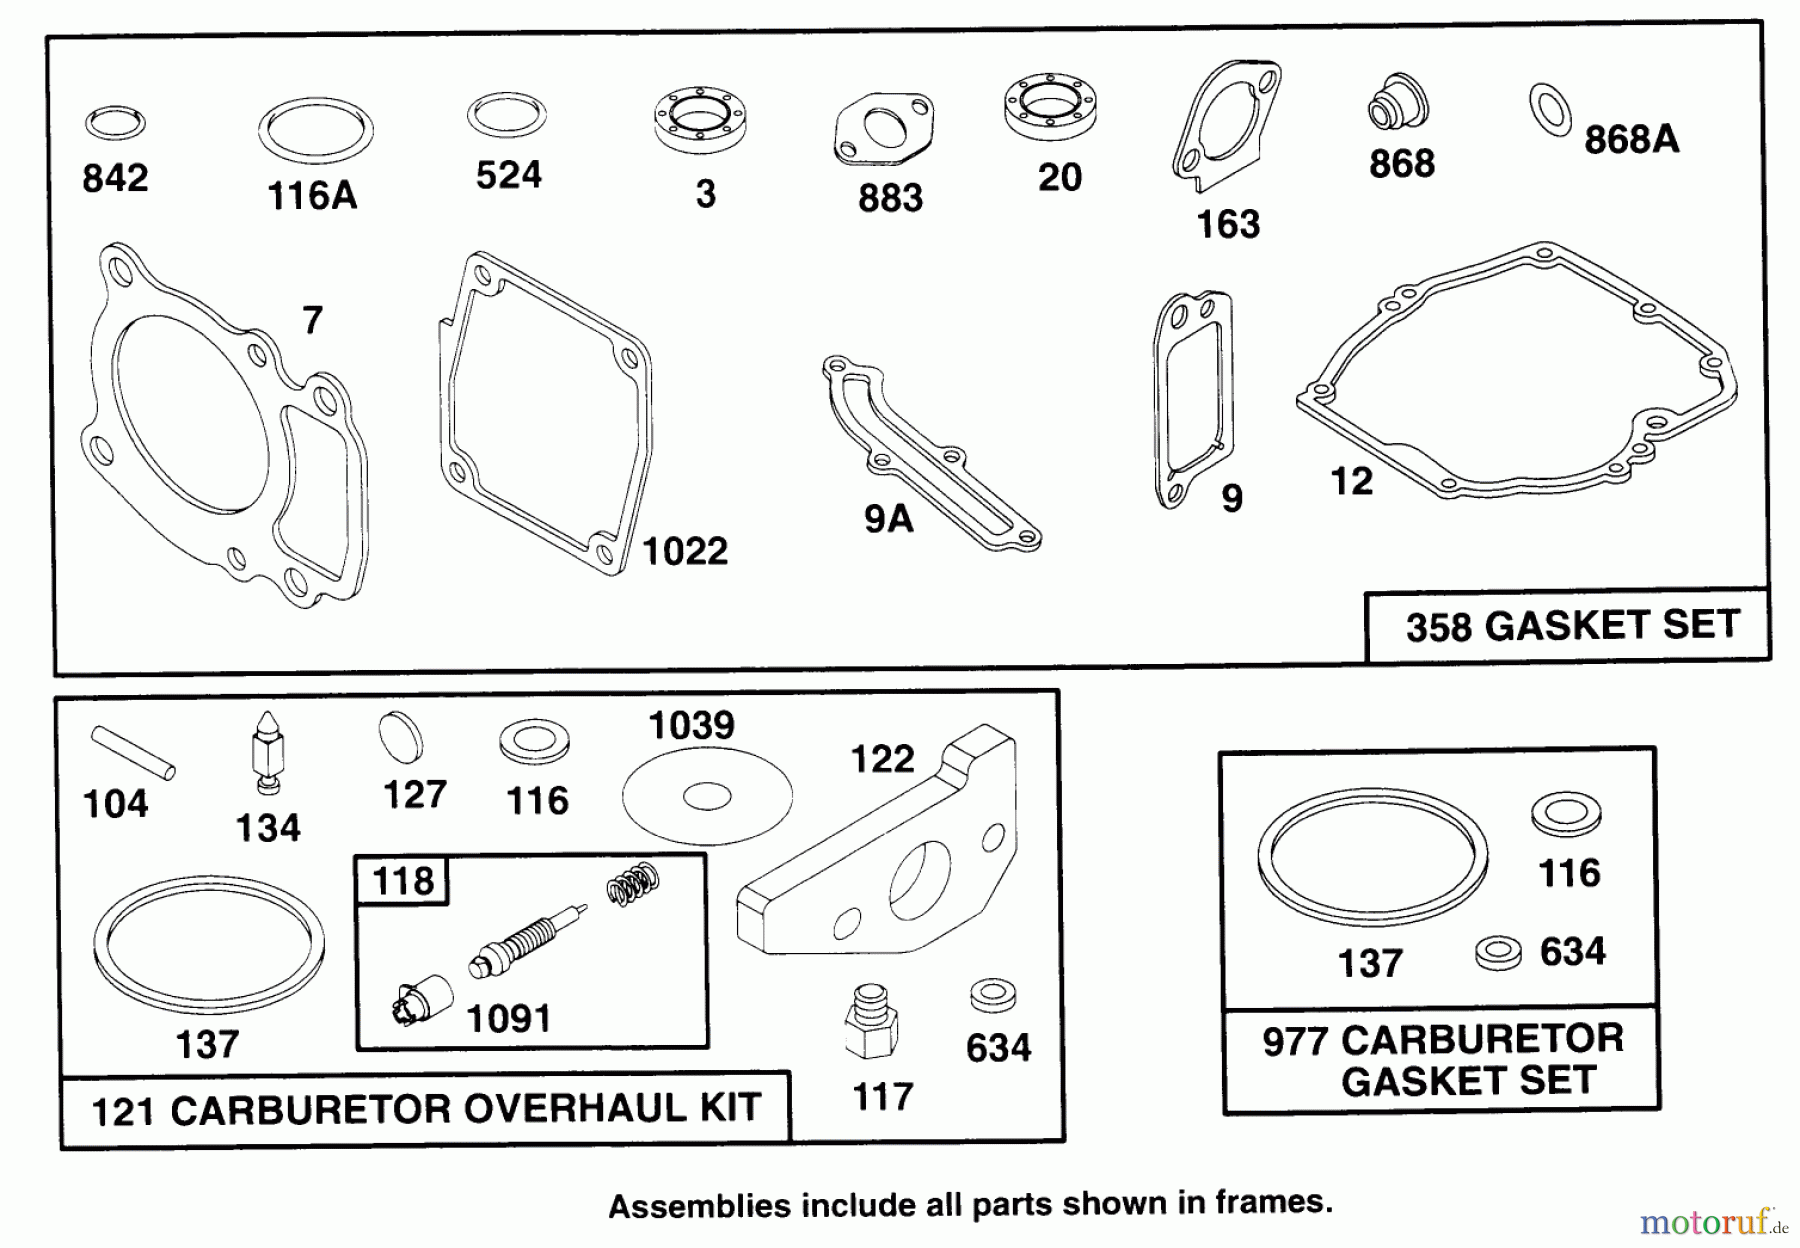  Toro Neu Mowers, Walk-Behind Seite 2 22151 - Toro Lawnmower, 1996 (6900001-6999999) ENGINE GTS 150 #8